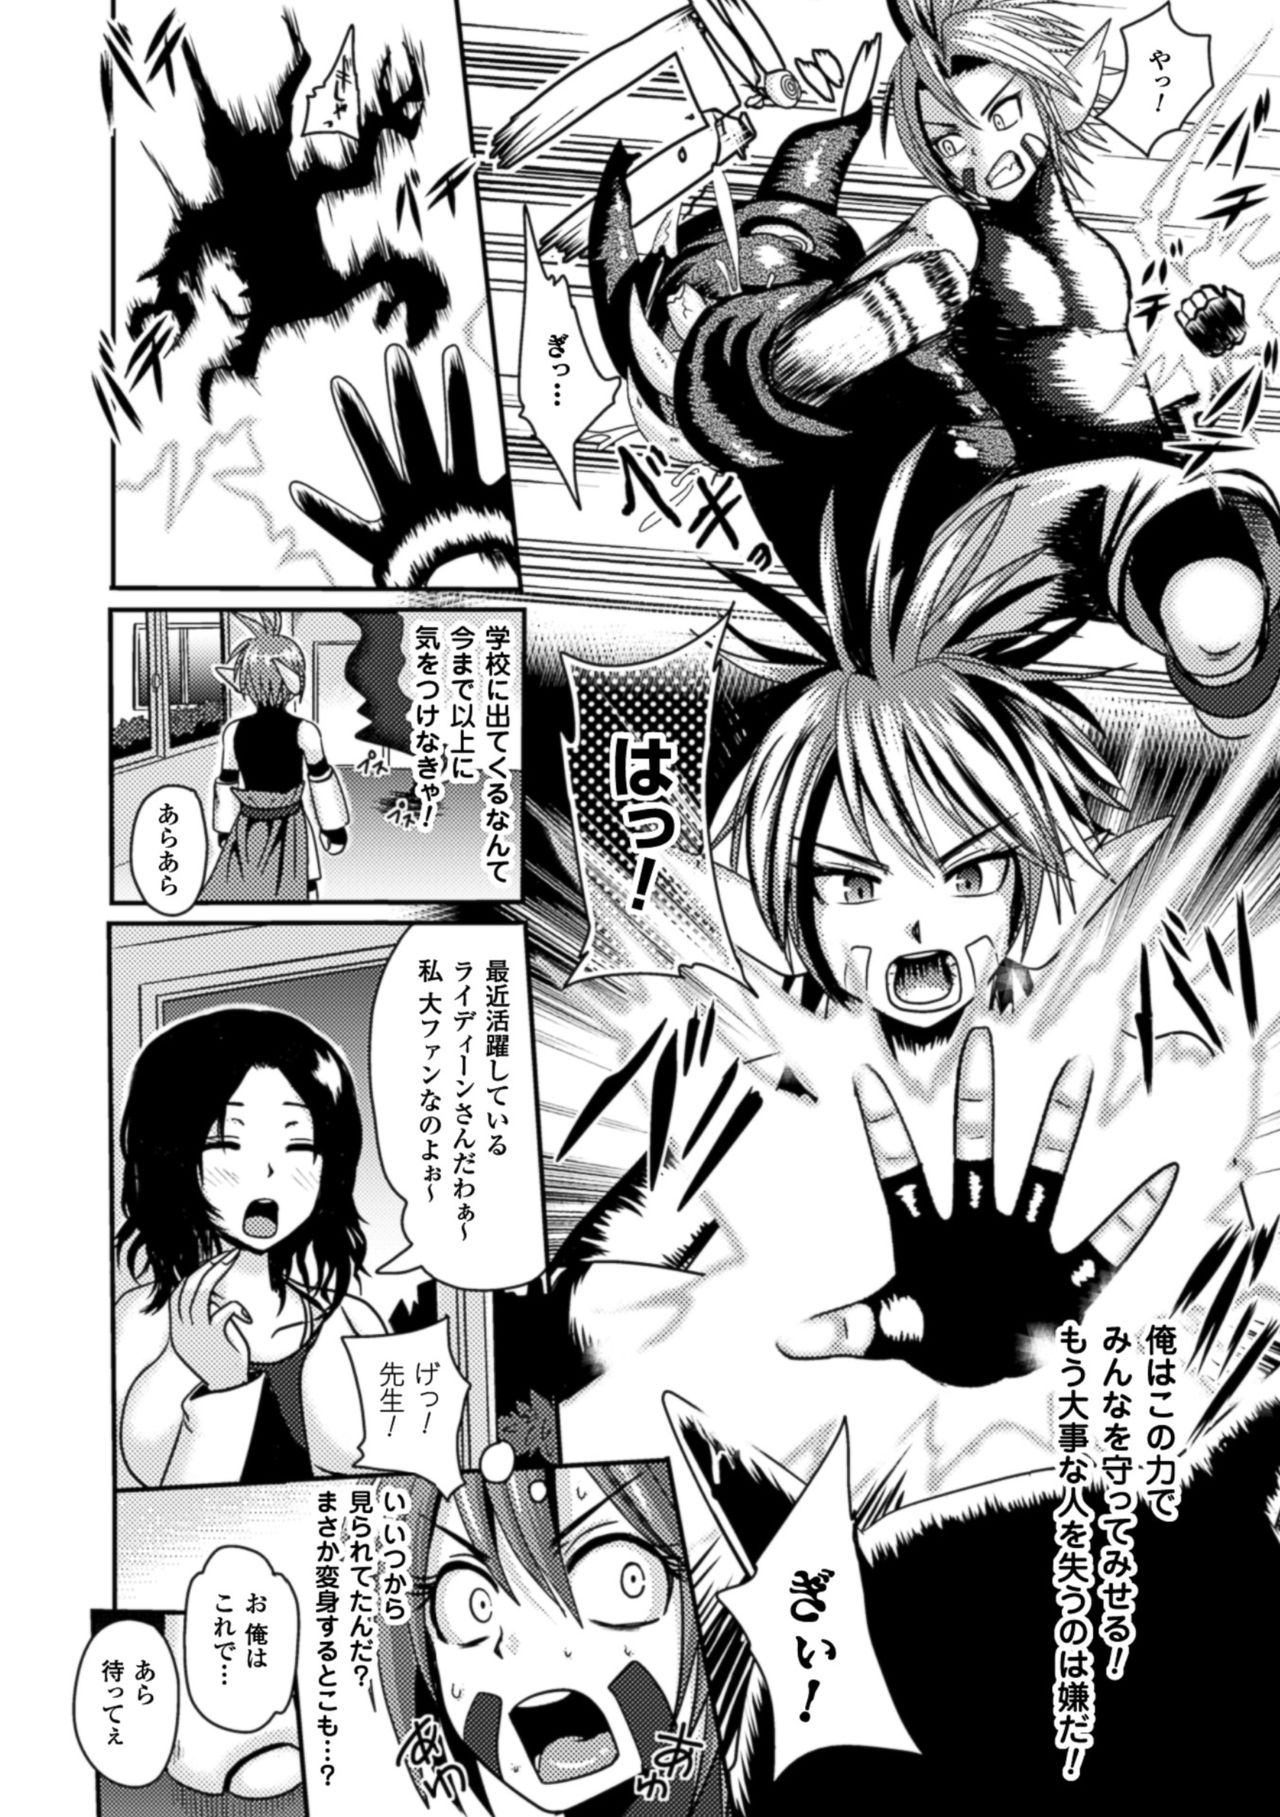 [Akuochisukii Sensei] Akuochisukii Sensei no Heroine Haiboku no Houteishiki - Equation of Heroine's defeat by Mr. Akuochisukii [Digital] 93